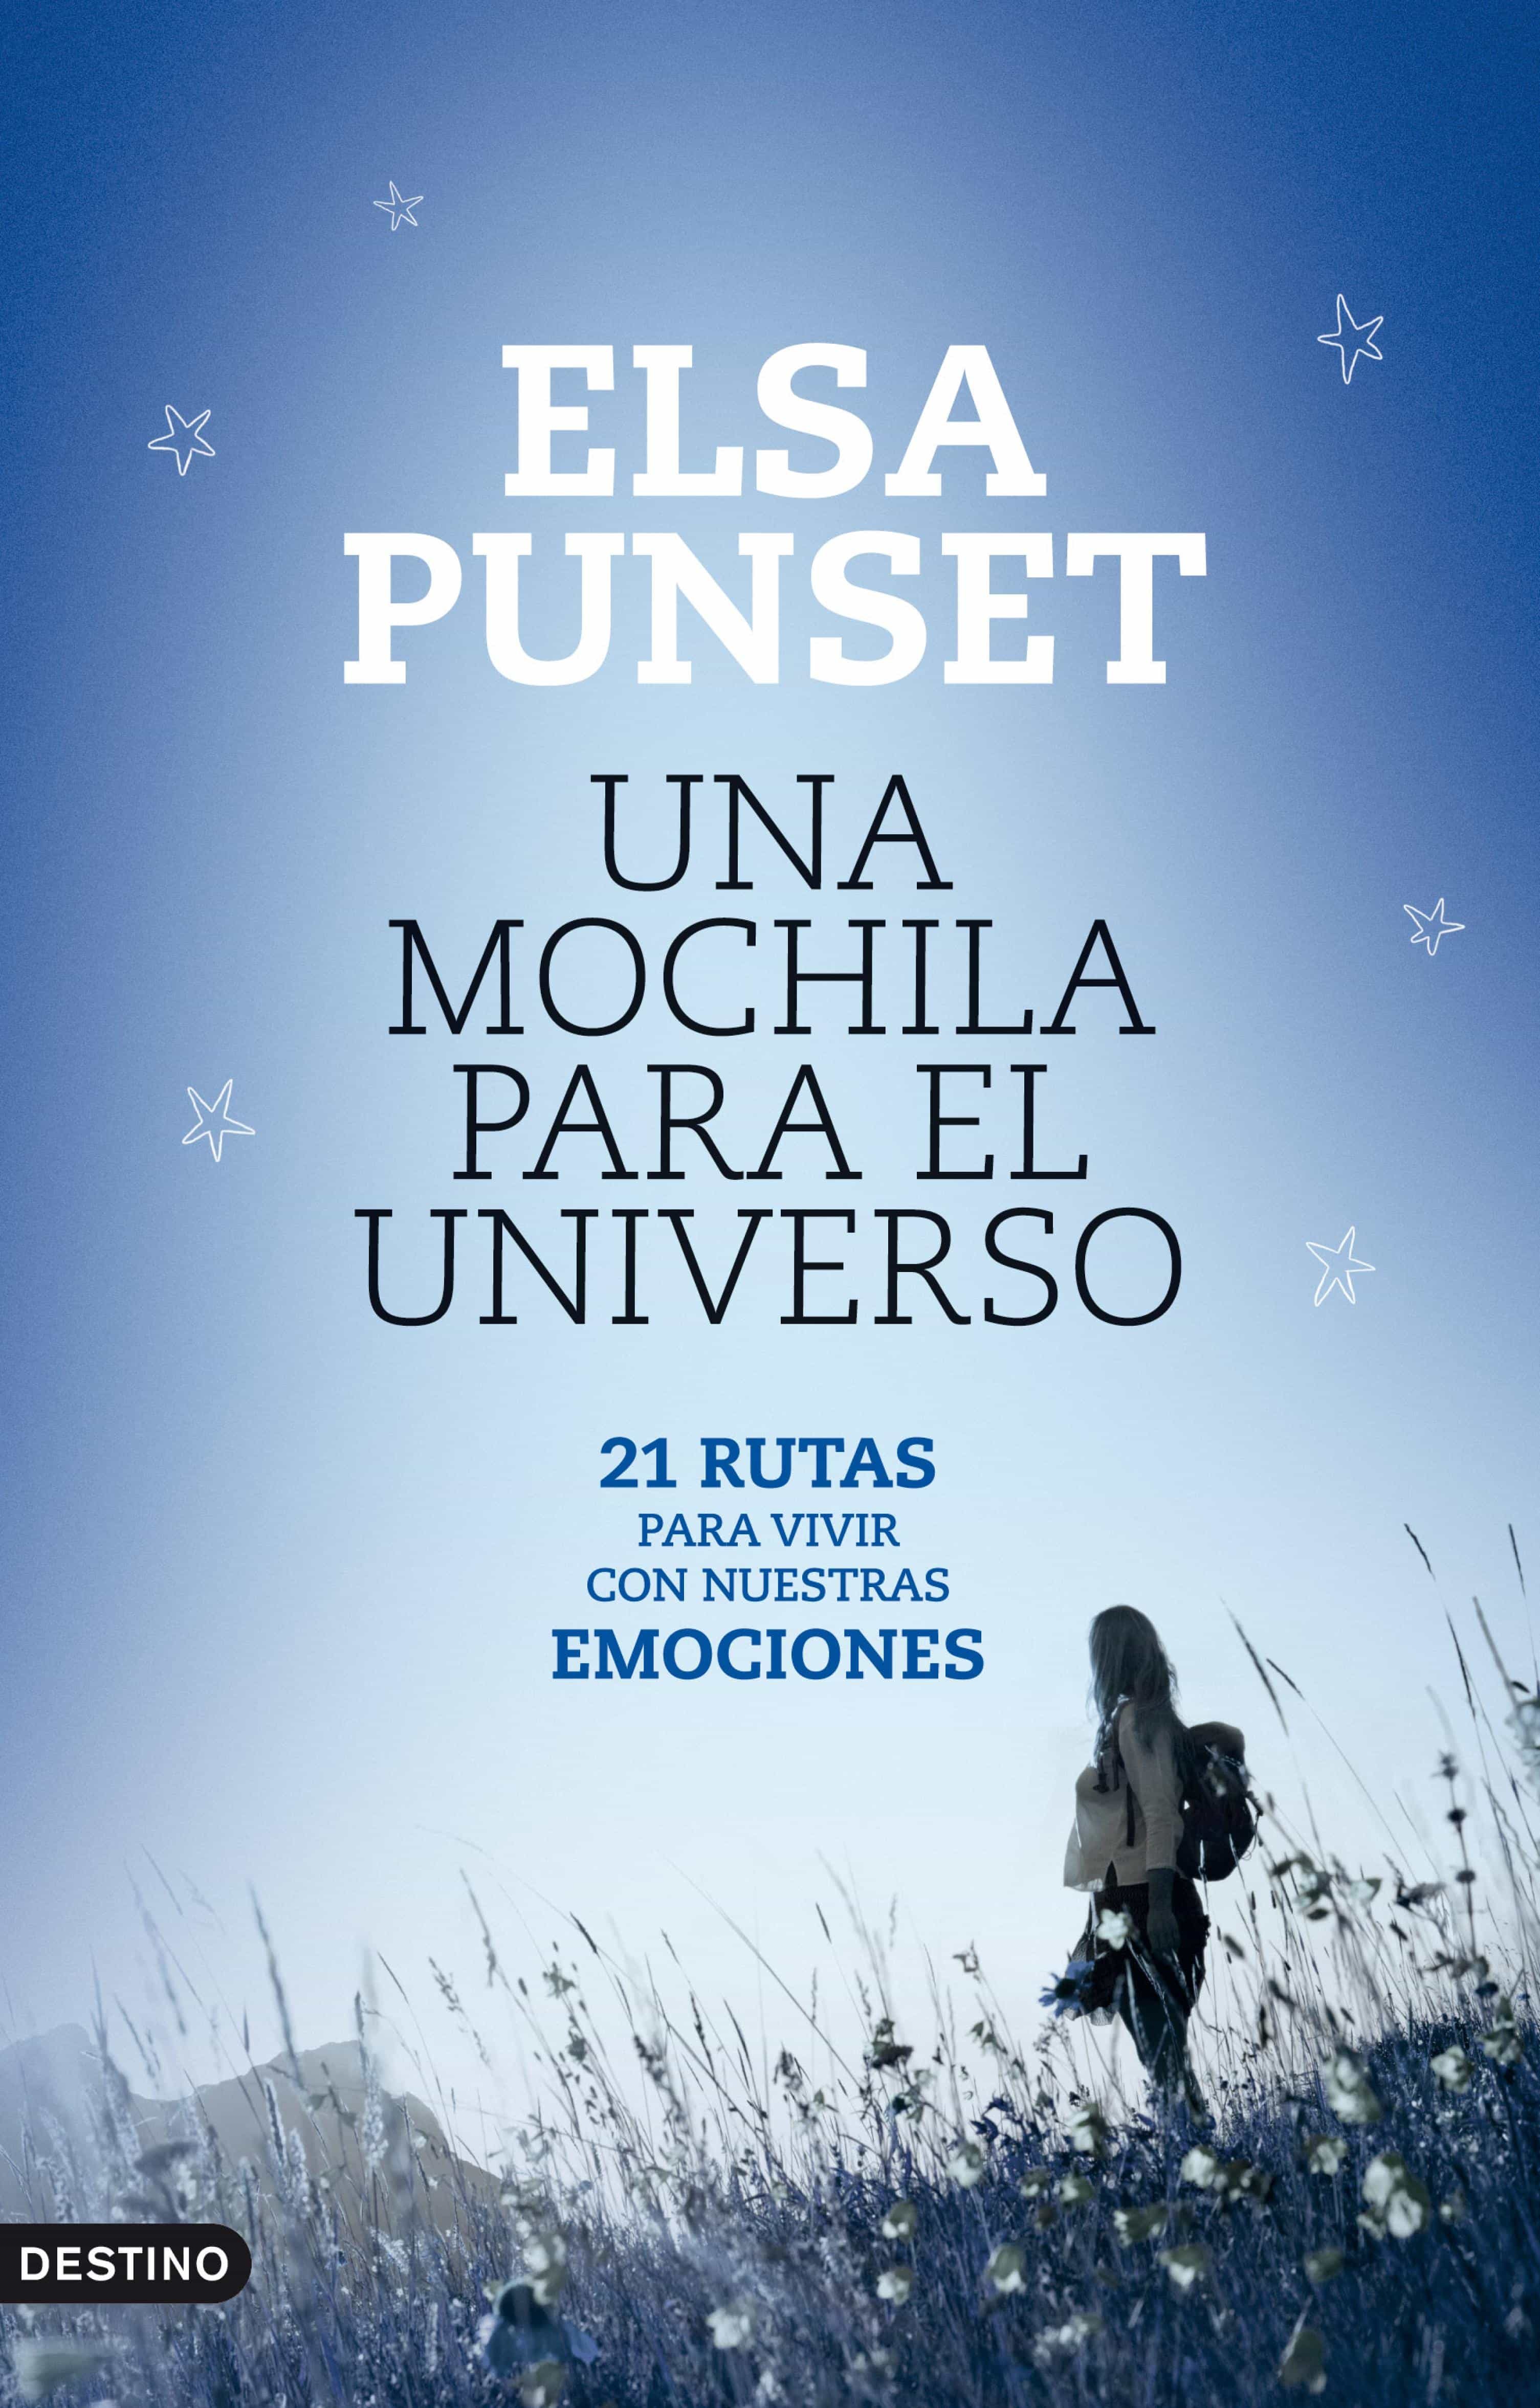 ELSA PUNSET UNA MOCHILA PARA EL UNIVERSO DESCARGAR PDF